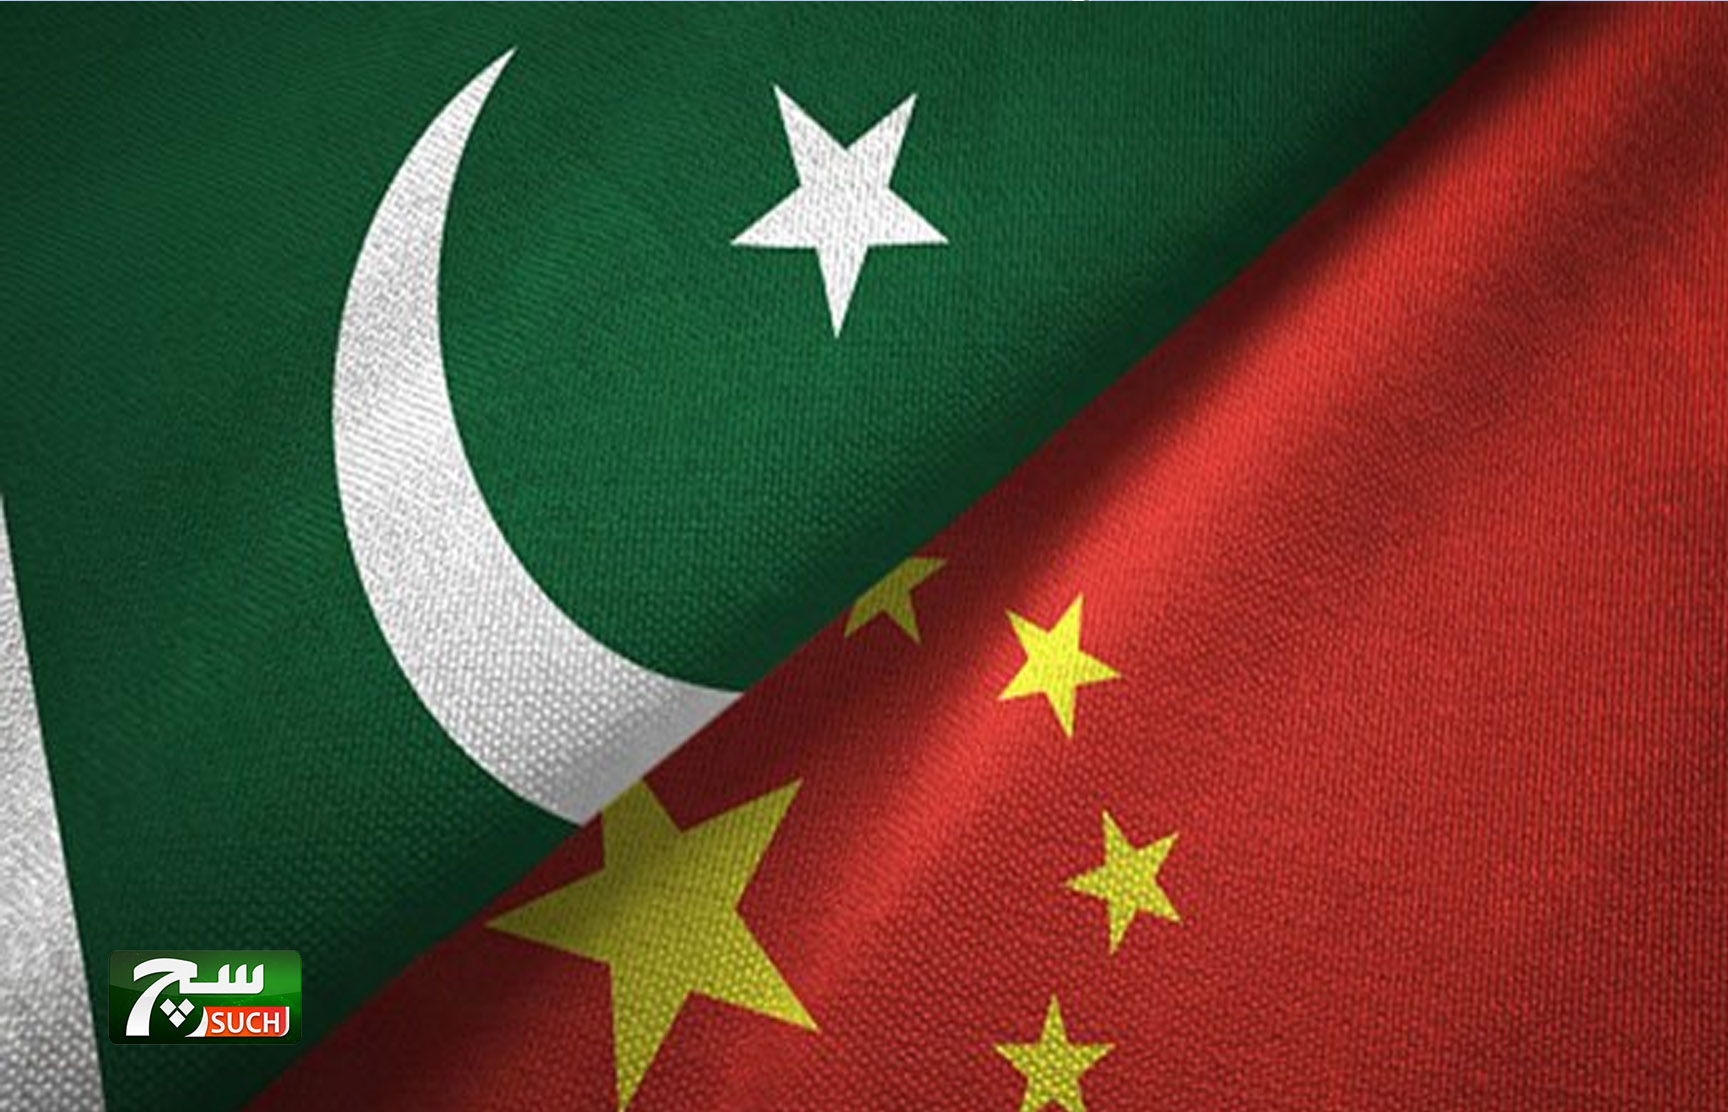 وزير المالية الباكستاني: تم ايداع قرضاً من الكونسورتيوم الصيني بقيمة 2.3 مليار دولار